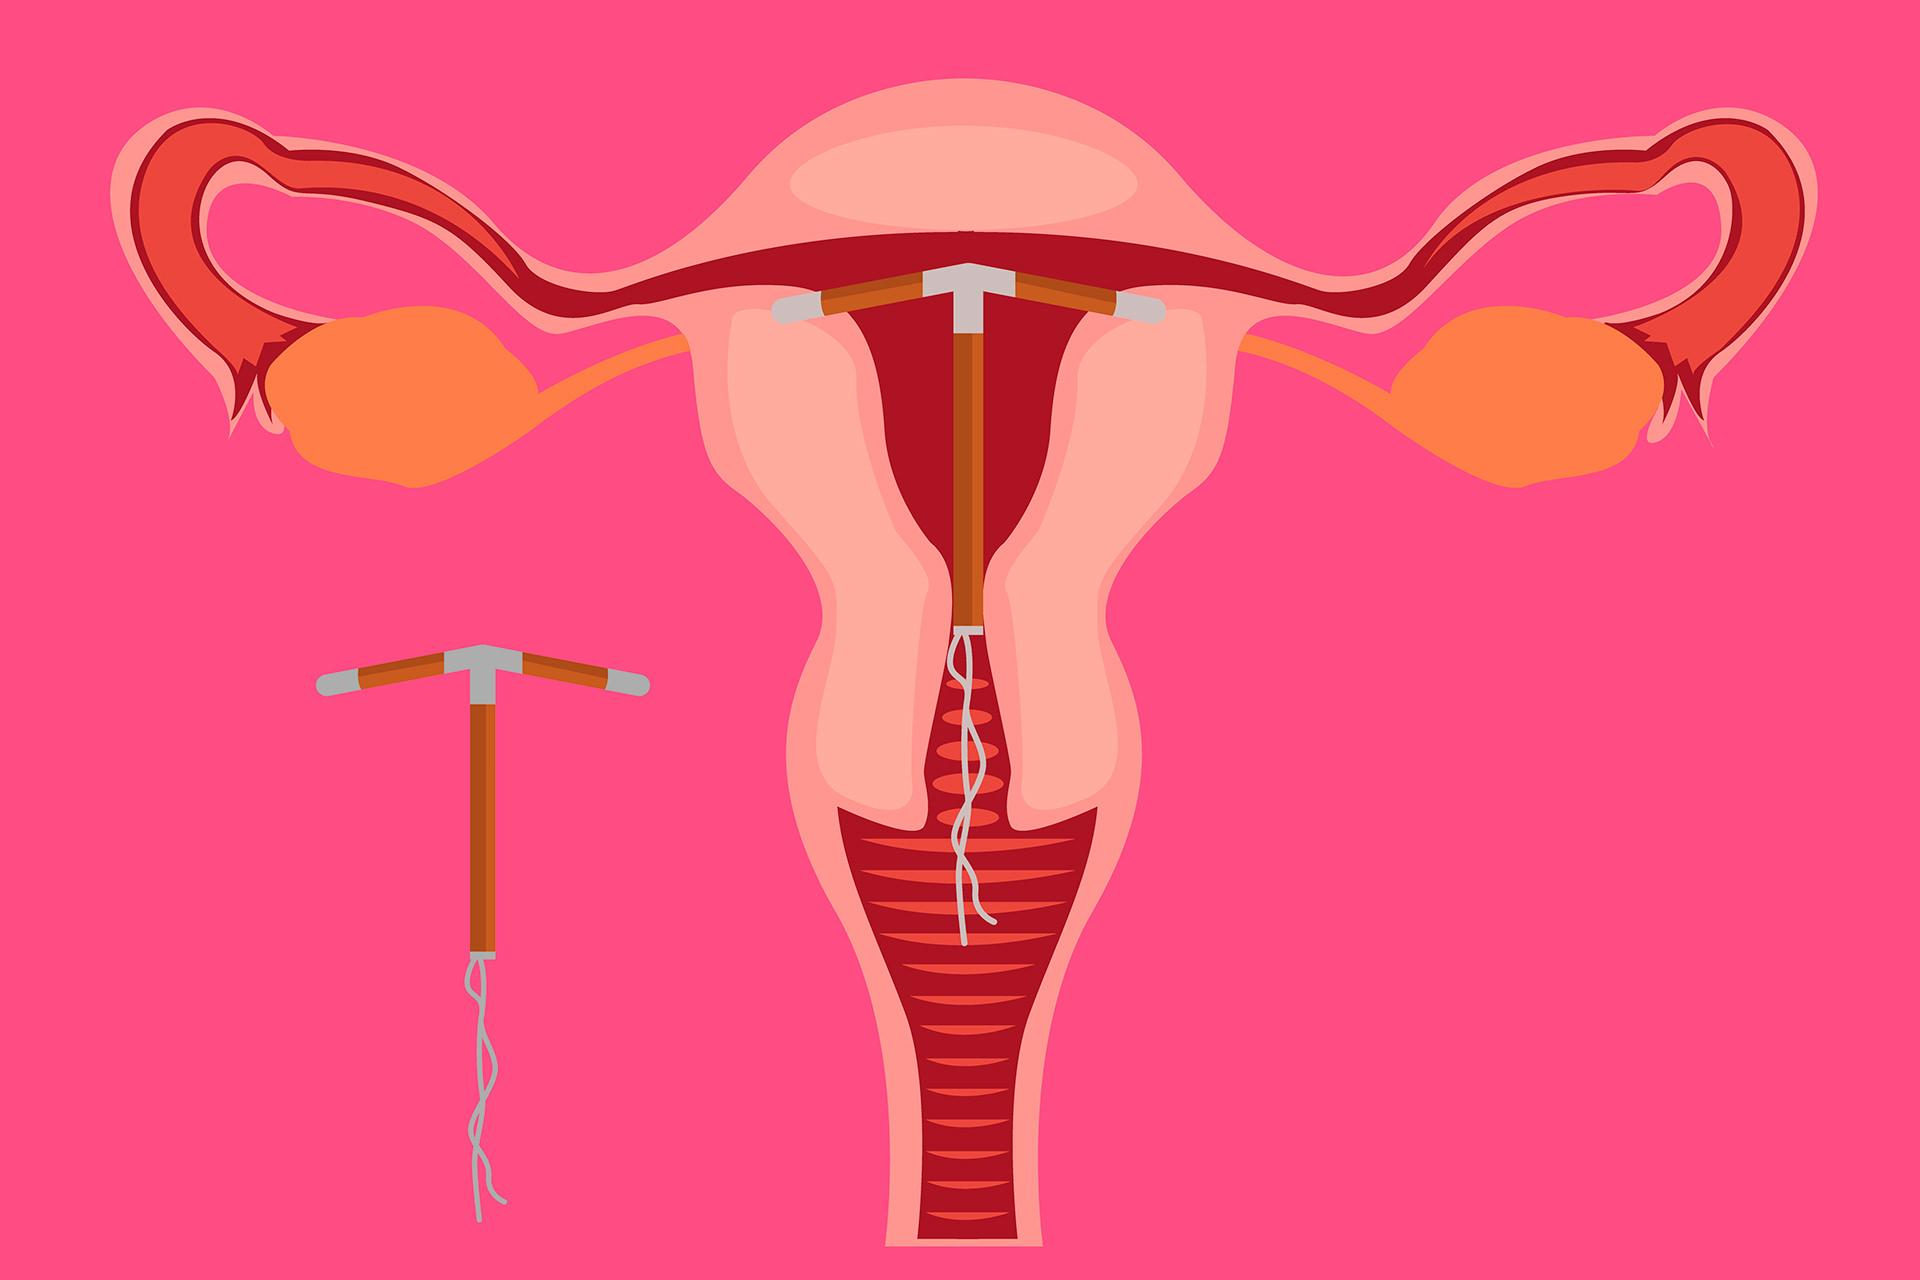 Установка и введение внутриматочной спирали внутриматочного контрацептива - ООО «Качество Жизни»